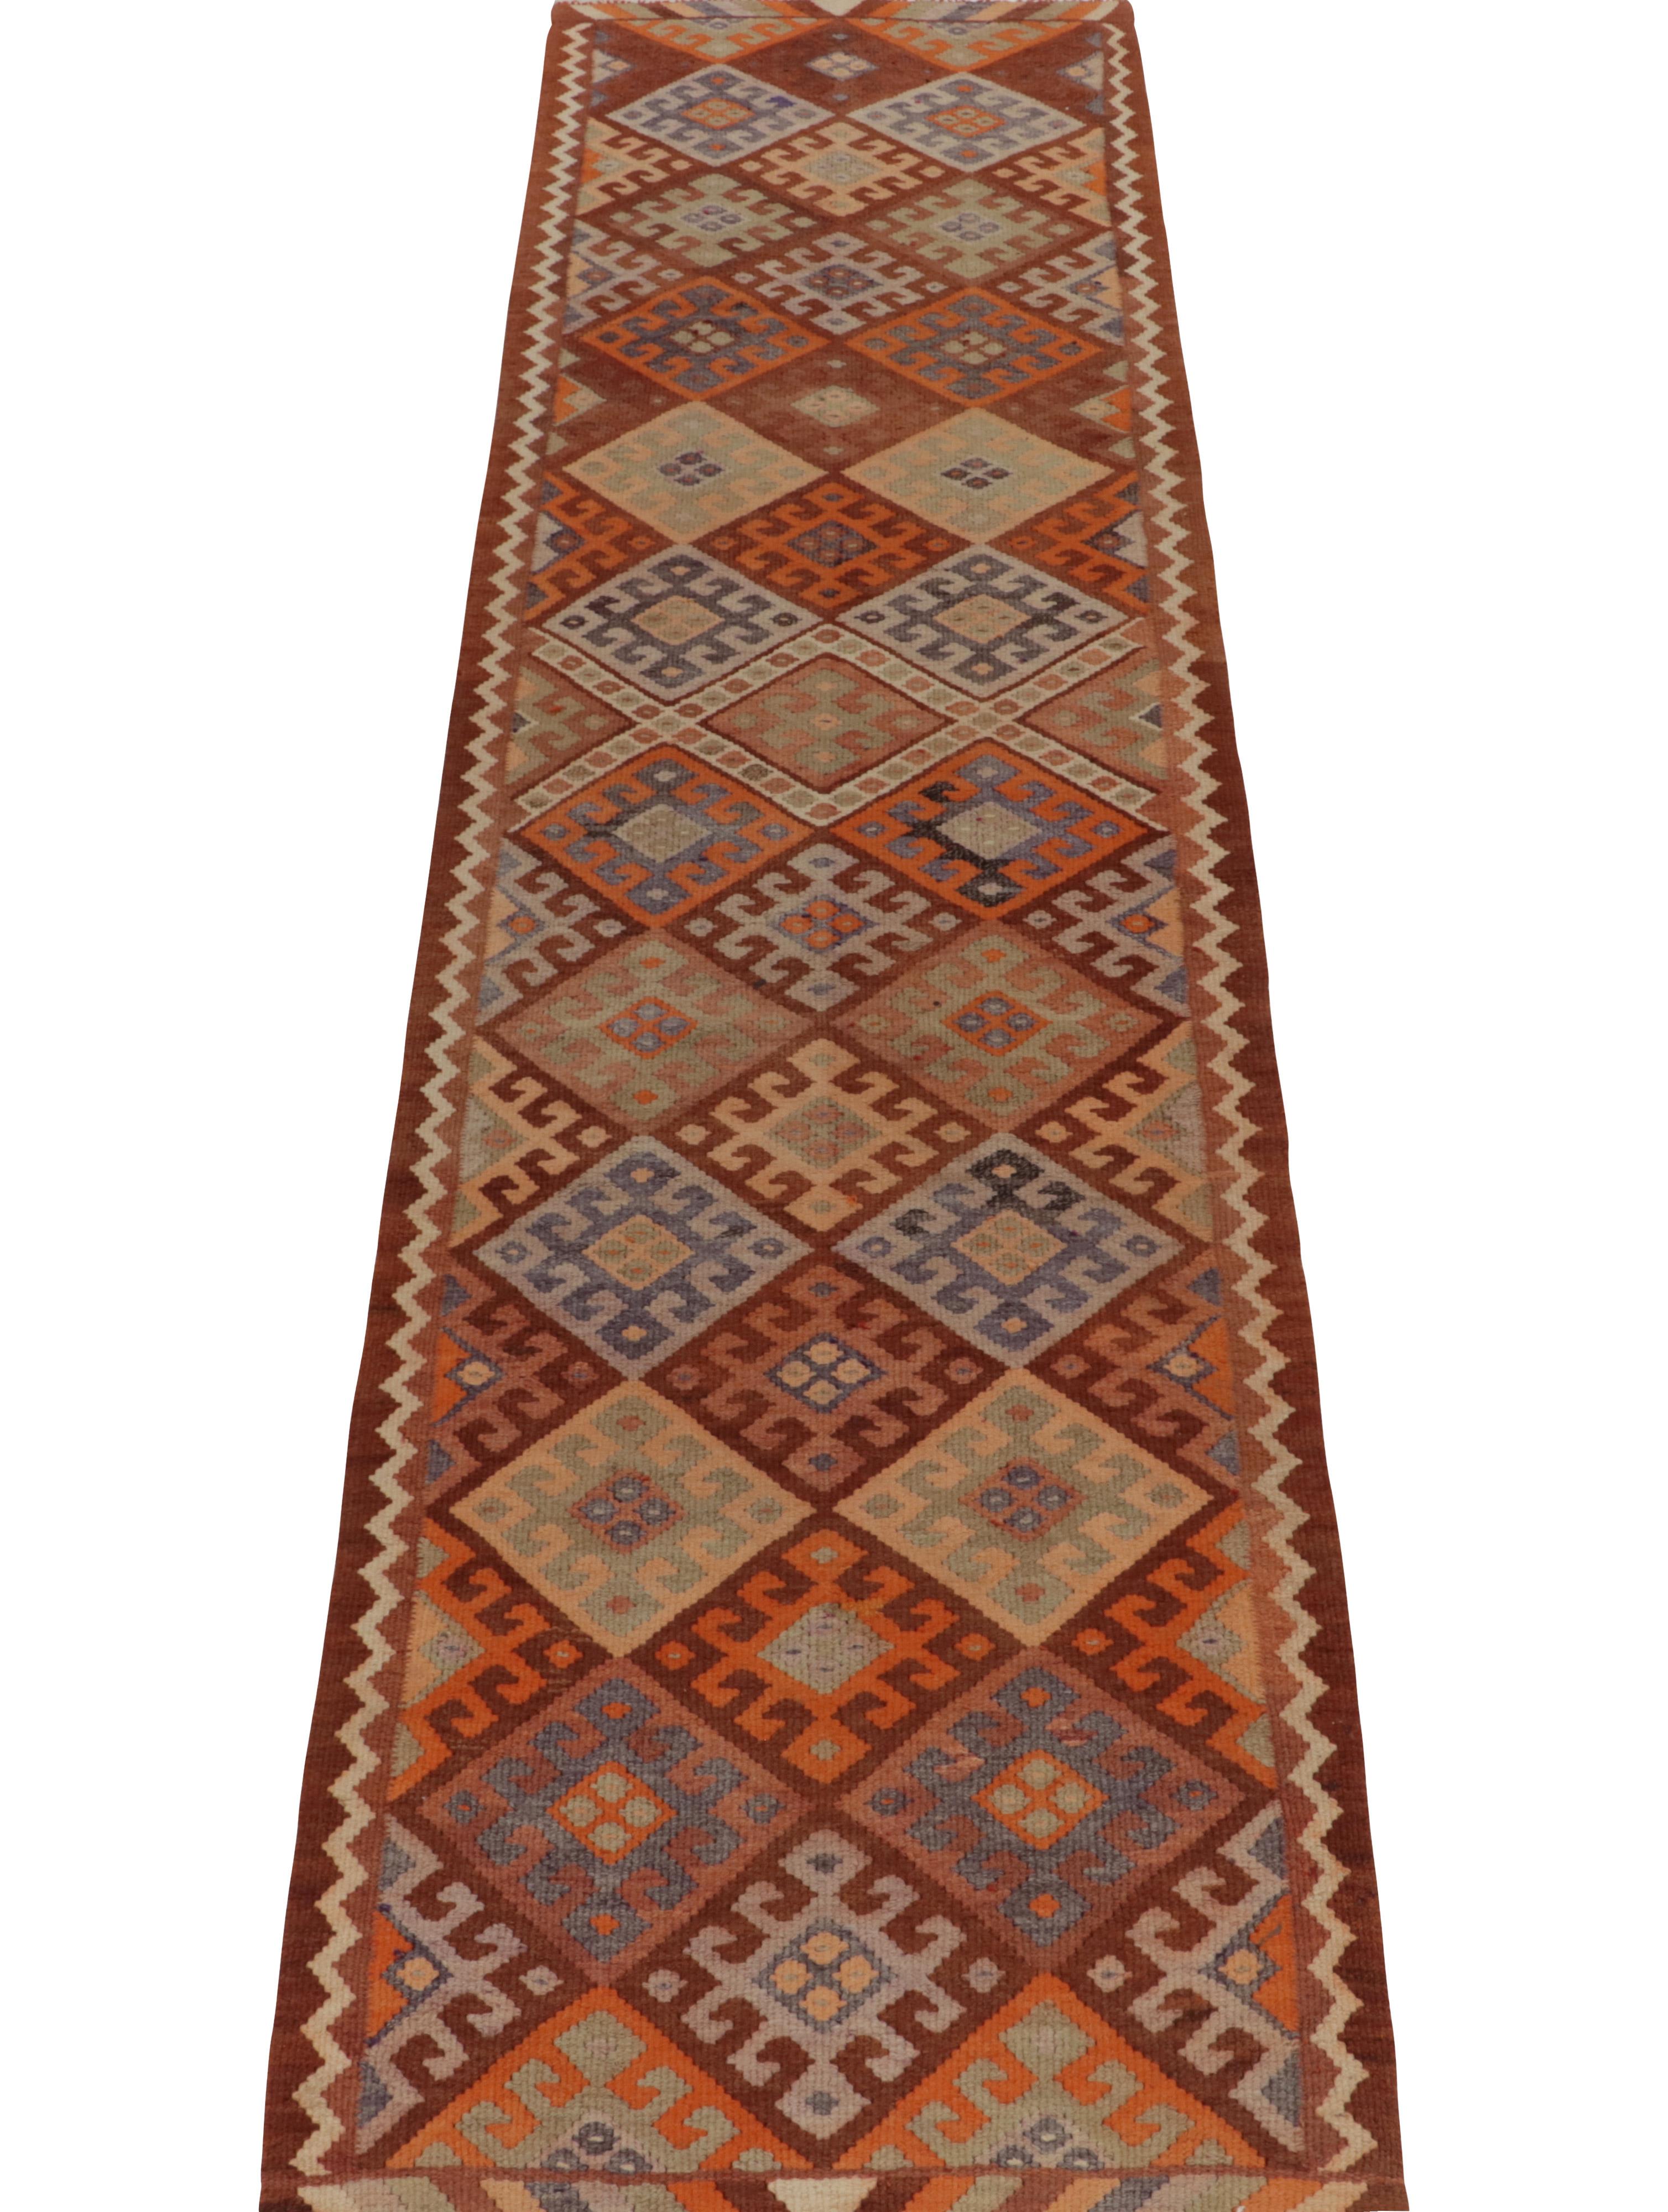 Turkish Vintage Tribal Kilim Runner in Rust Brown Geometric Pattern by Rug & Kilim For Sale